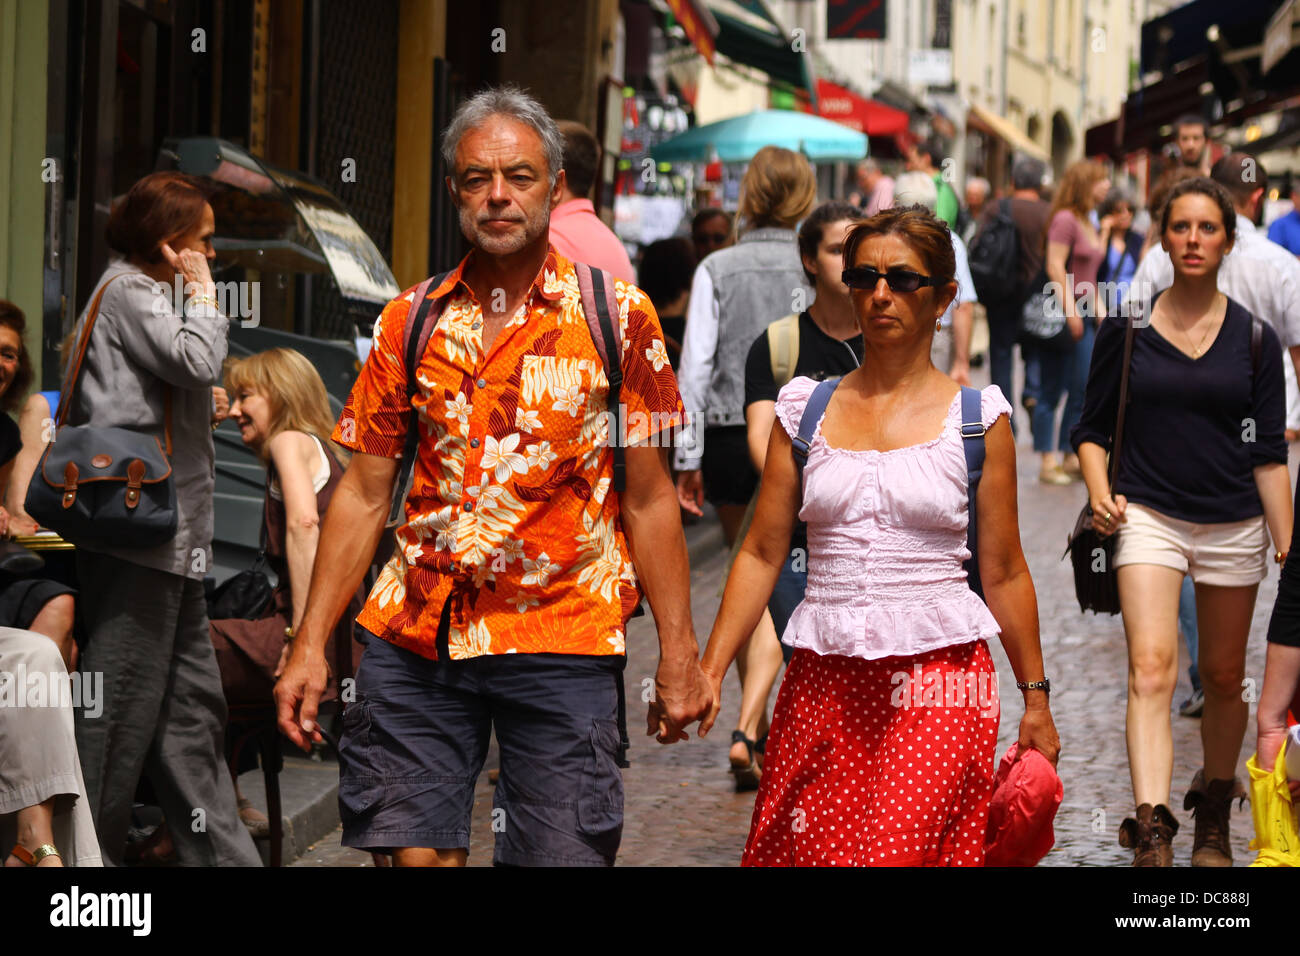 Couple de touristes marcher main dans la main à travers la foule à la rue Mouffetard, Quartier Latin, Paris, France Banque D'Images